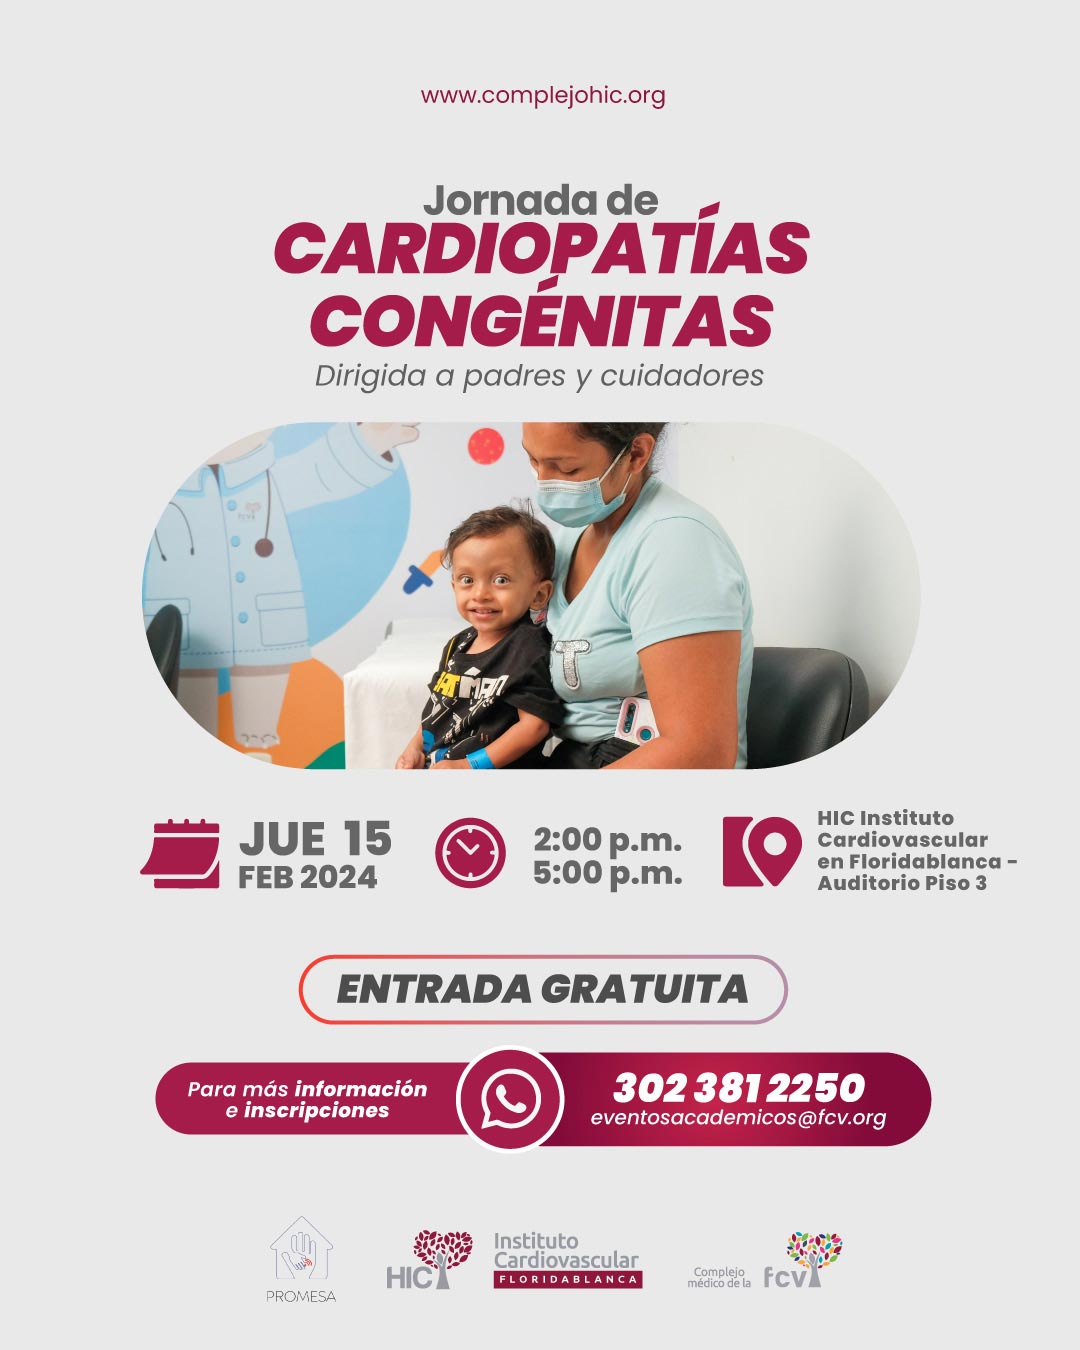 Jornada de Cardiopatías Congénitas - Dirigida a padres y cuidadores 